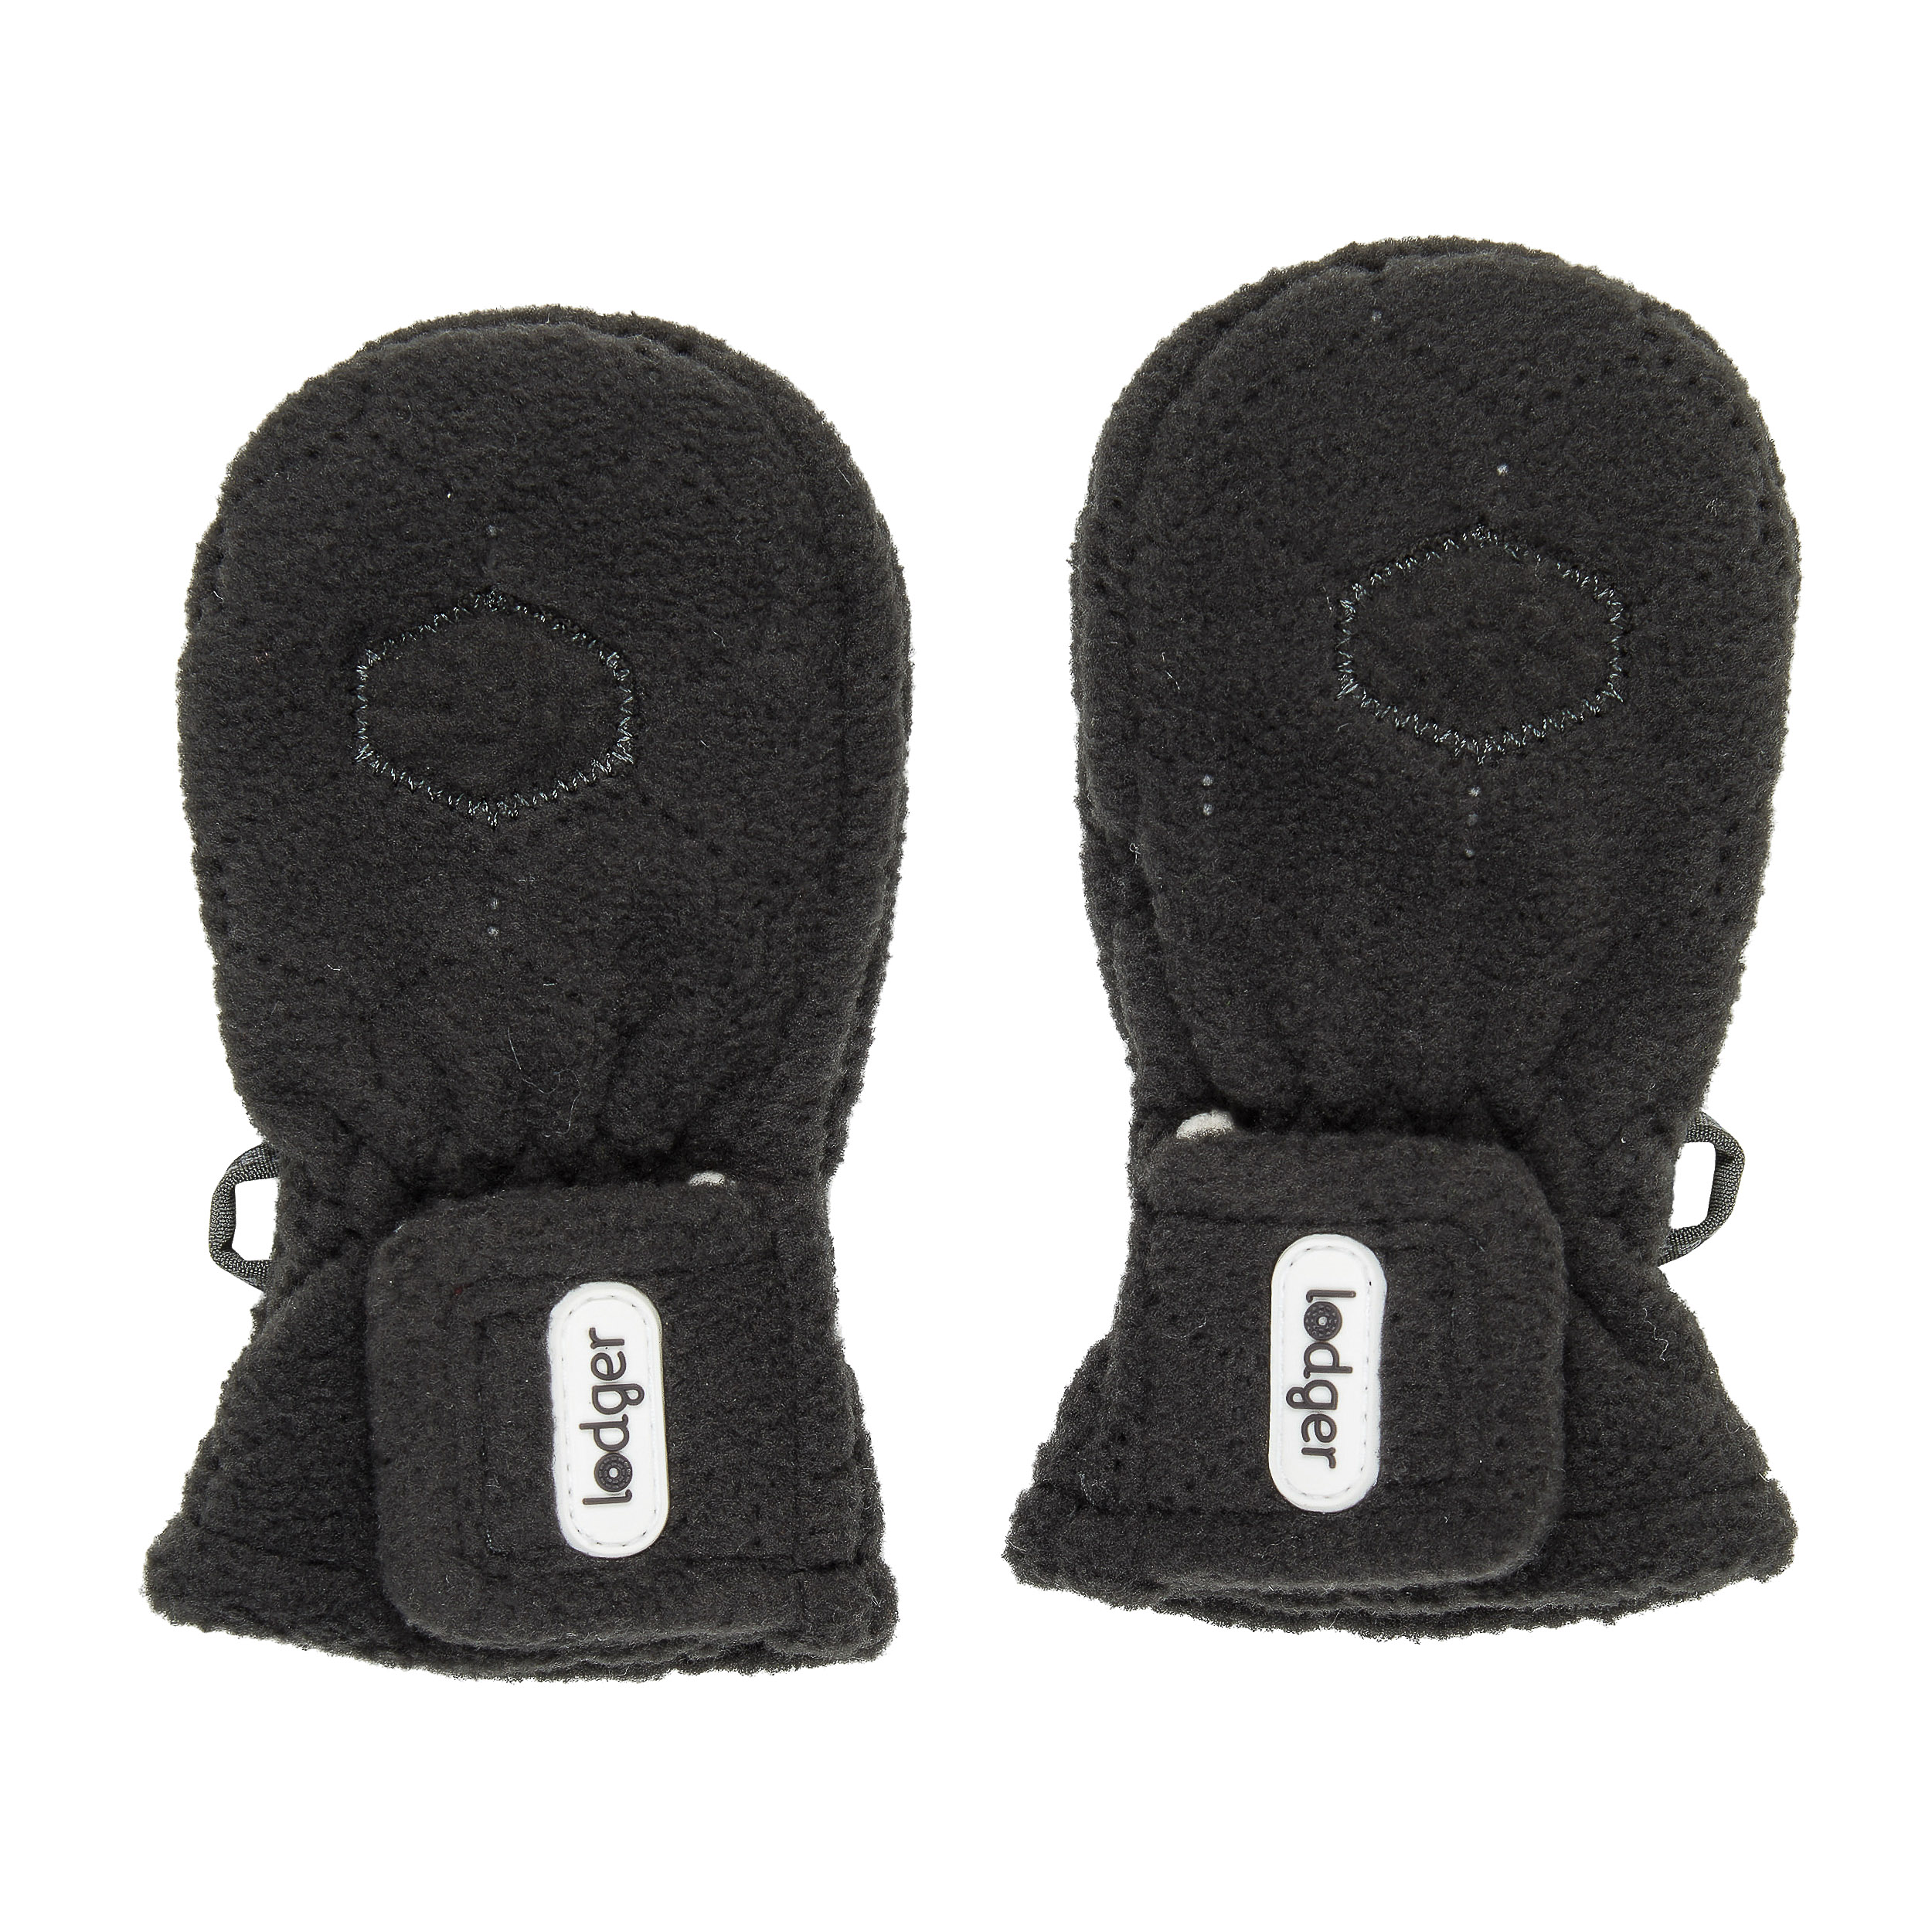 black baby mittens